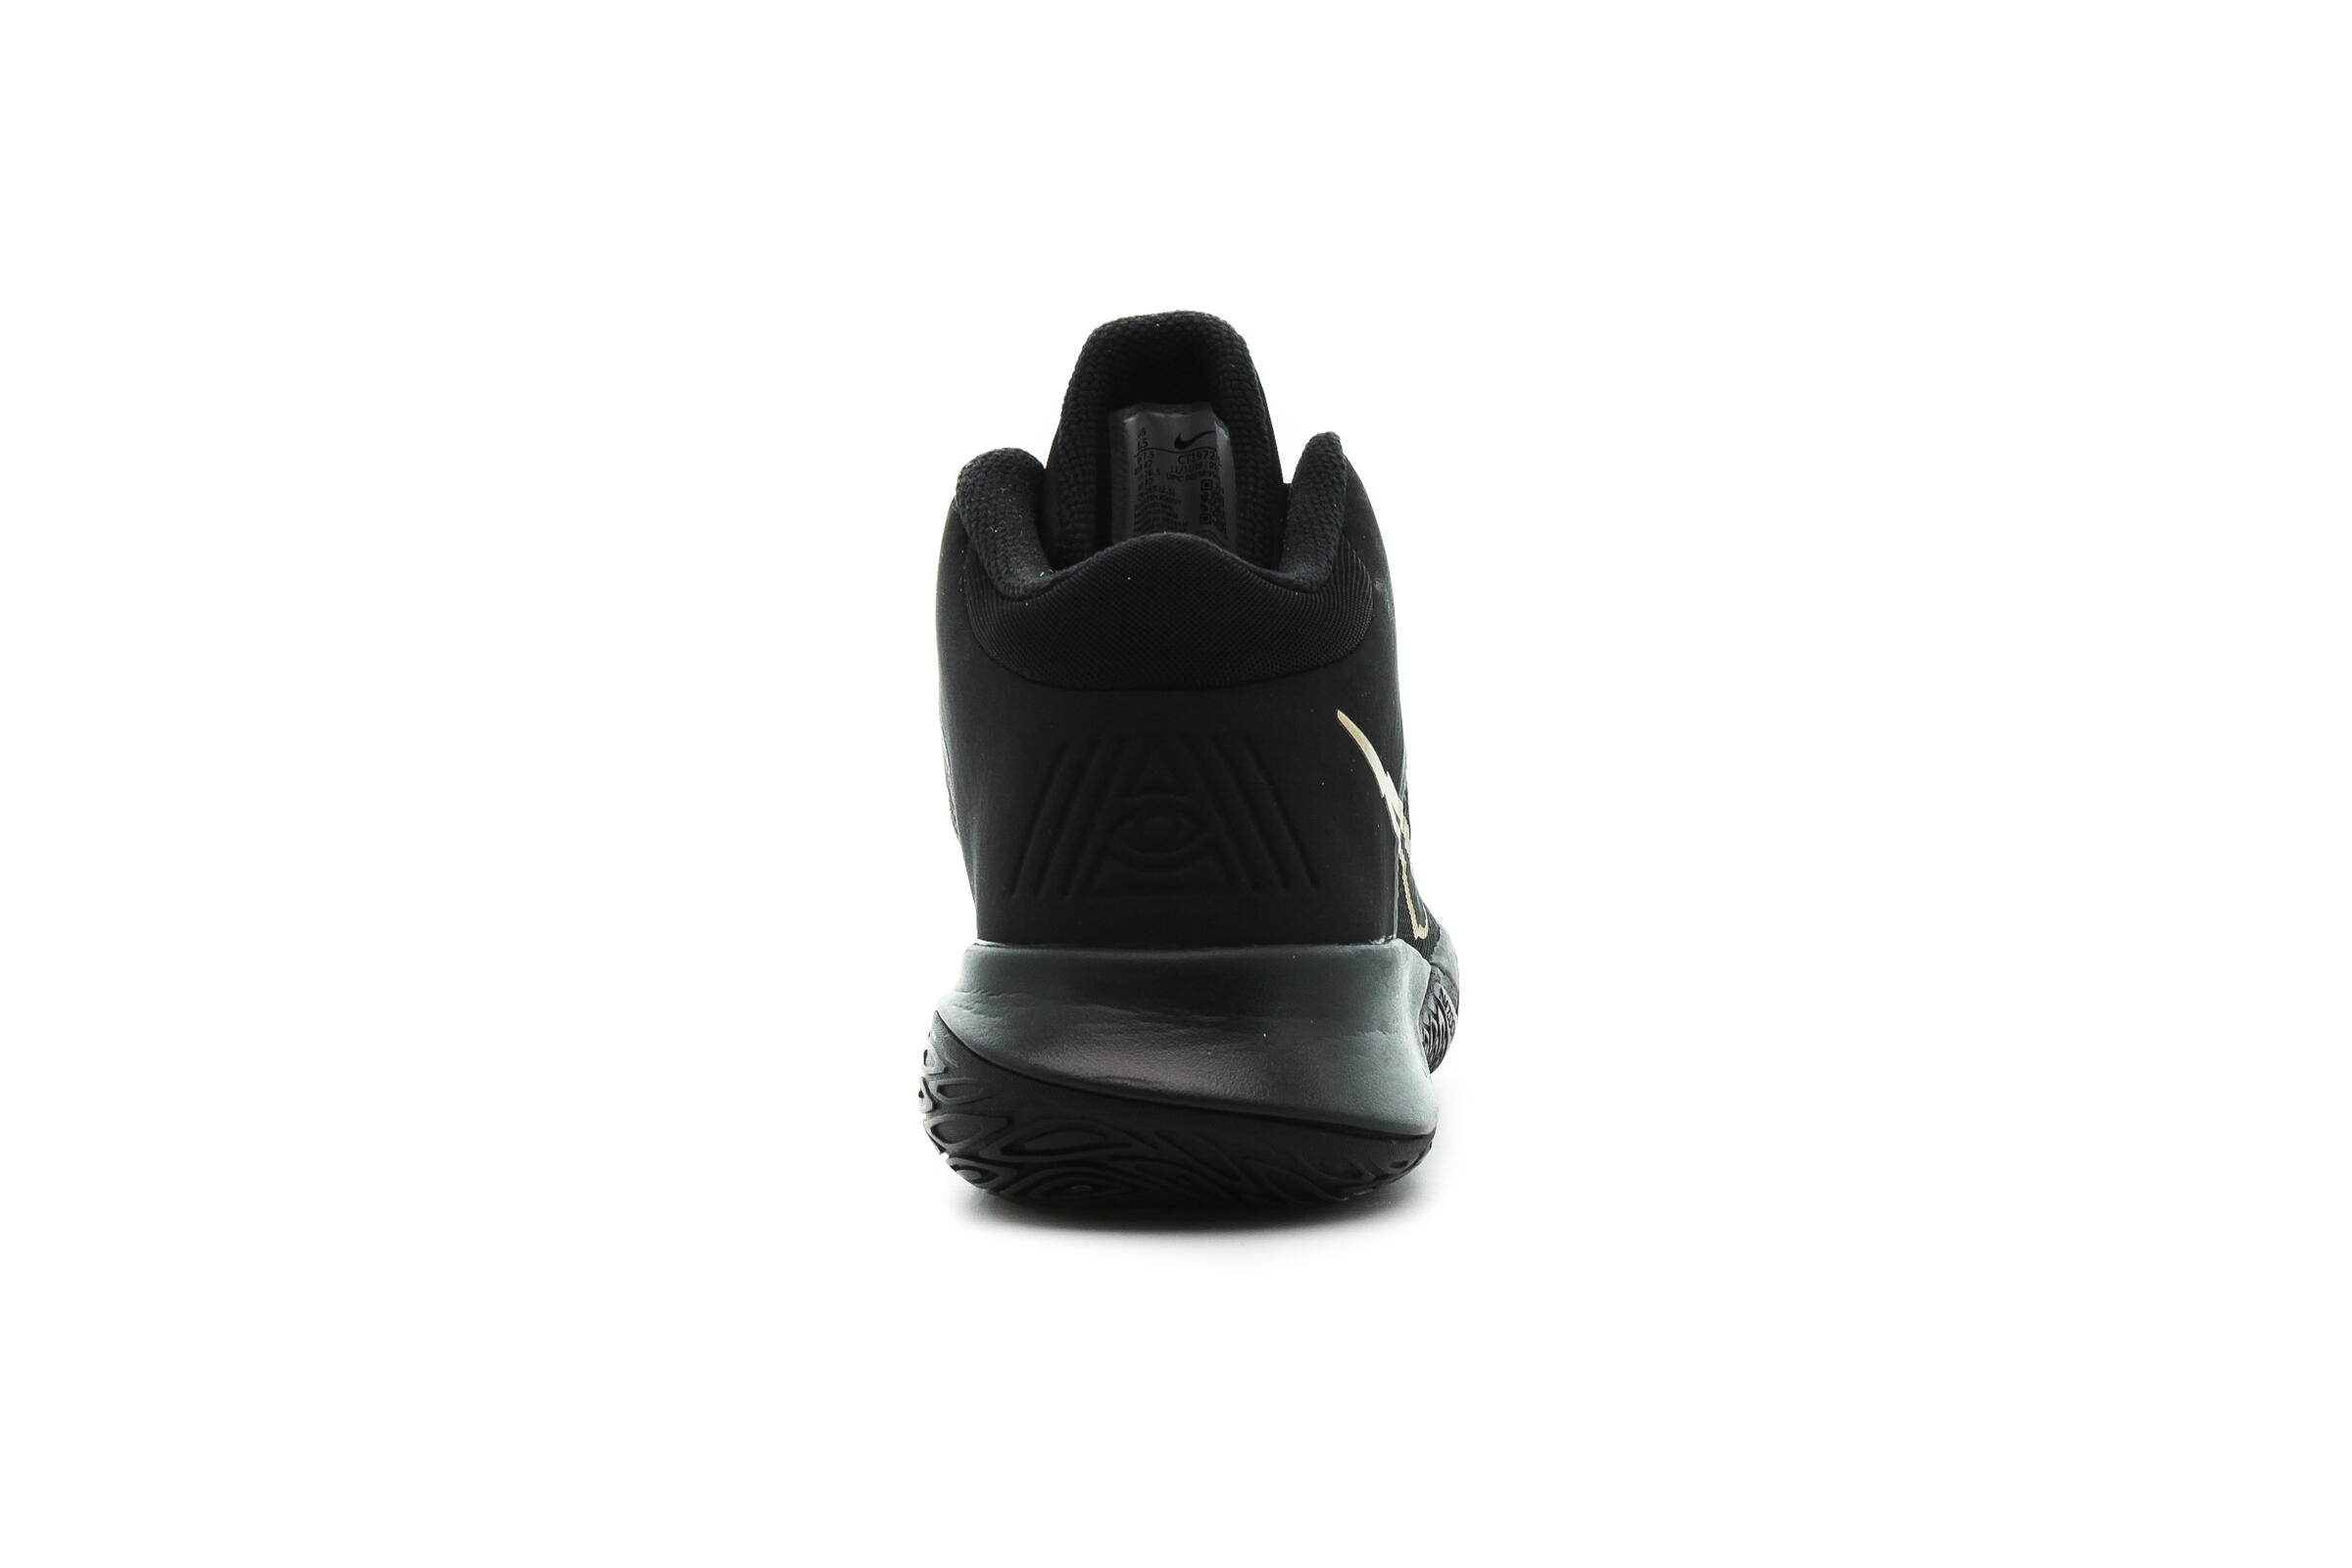 Nike KYRIE FLYTRAP IV "BLACK"